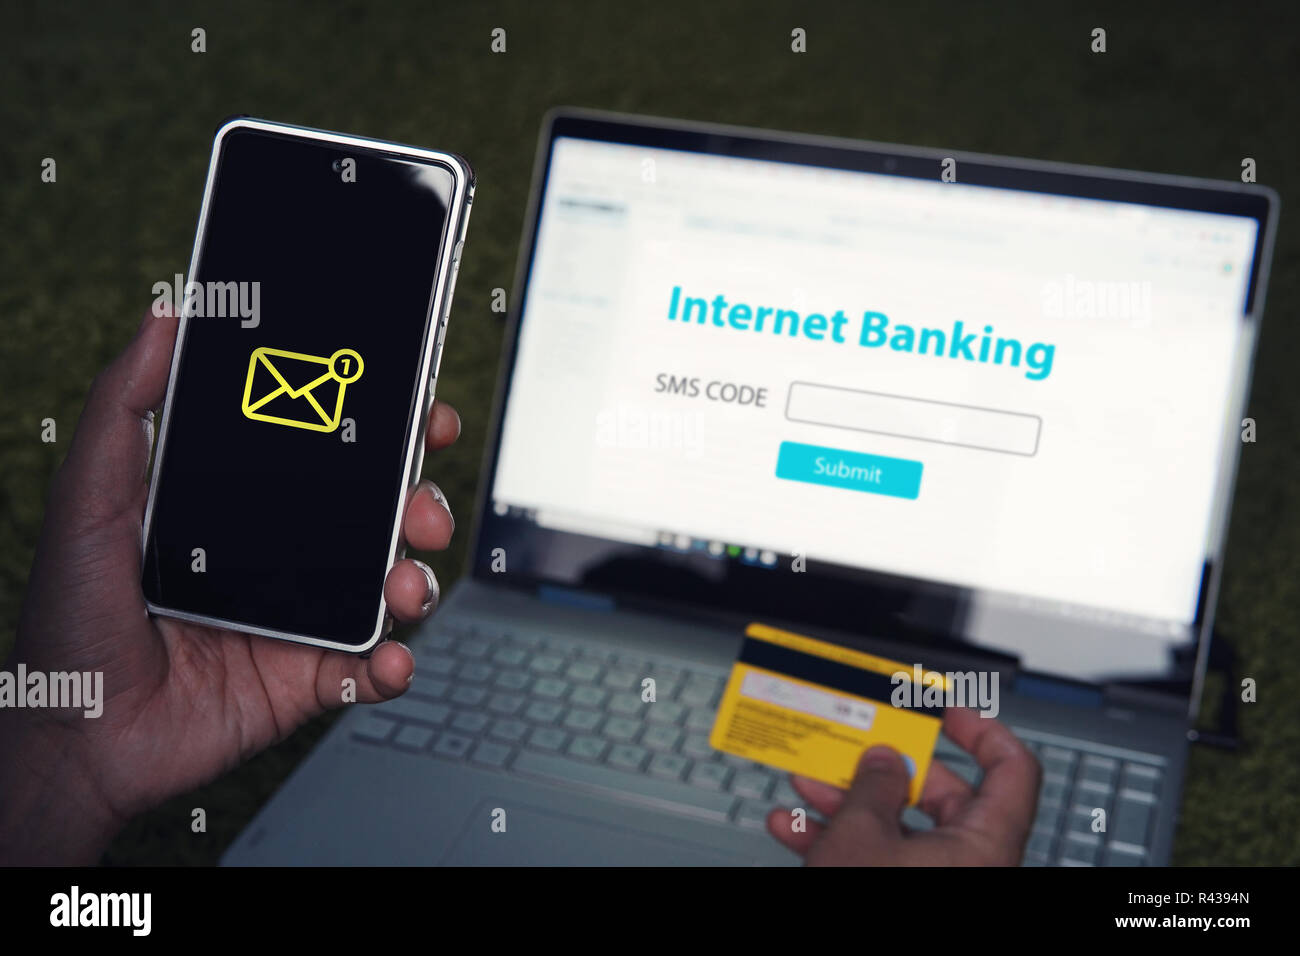 Internet Banking Online Payment Technologie Konzept. Kam SMS-Passwort von Ihrem persönlichen Konto Handy online Bank online banking eingegeben wird durch ein individuelles Passwort geschützt. Stockfoto